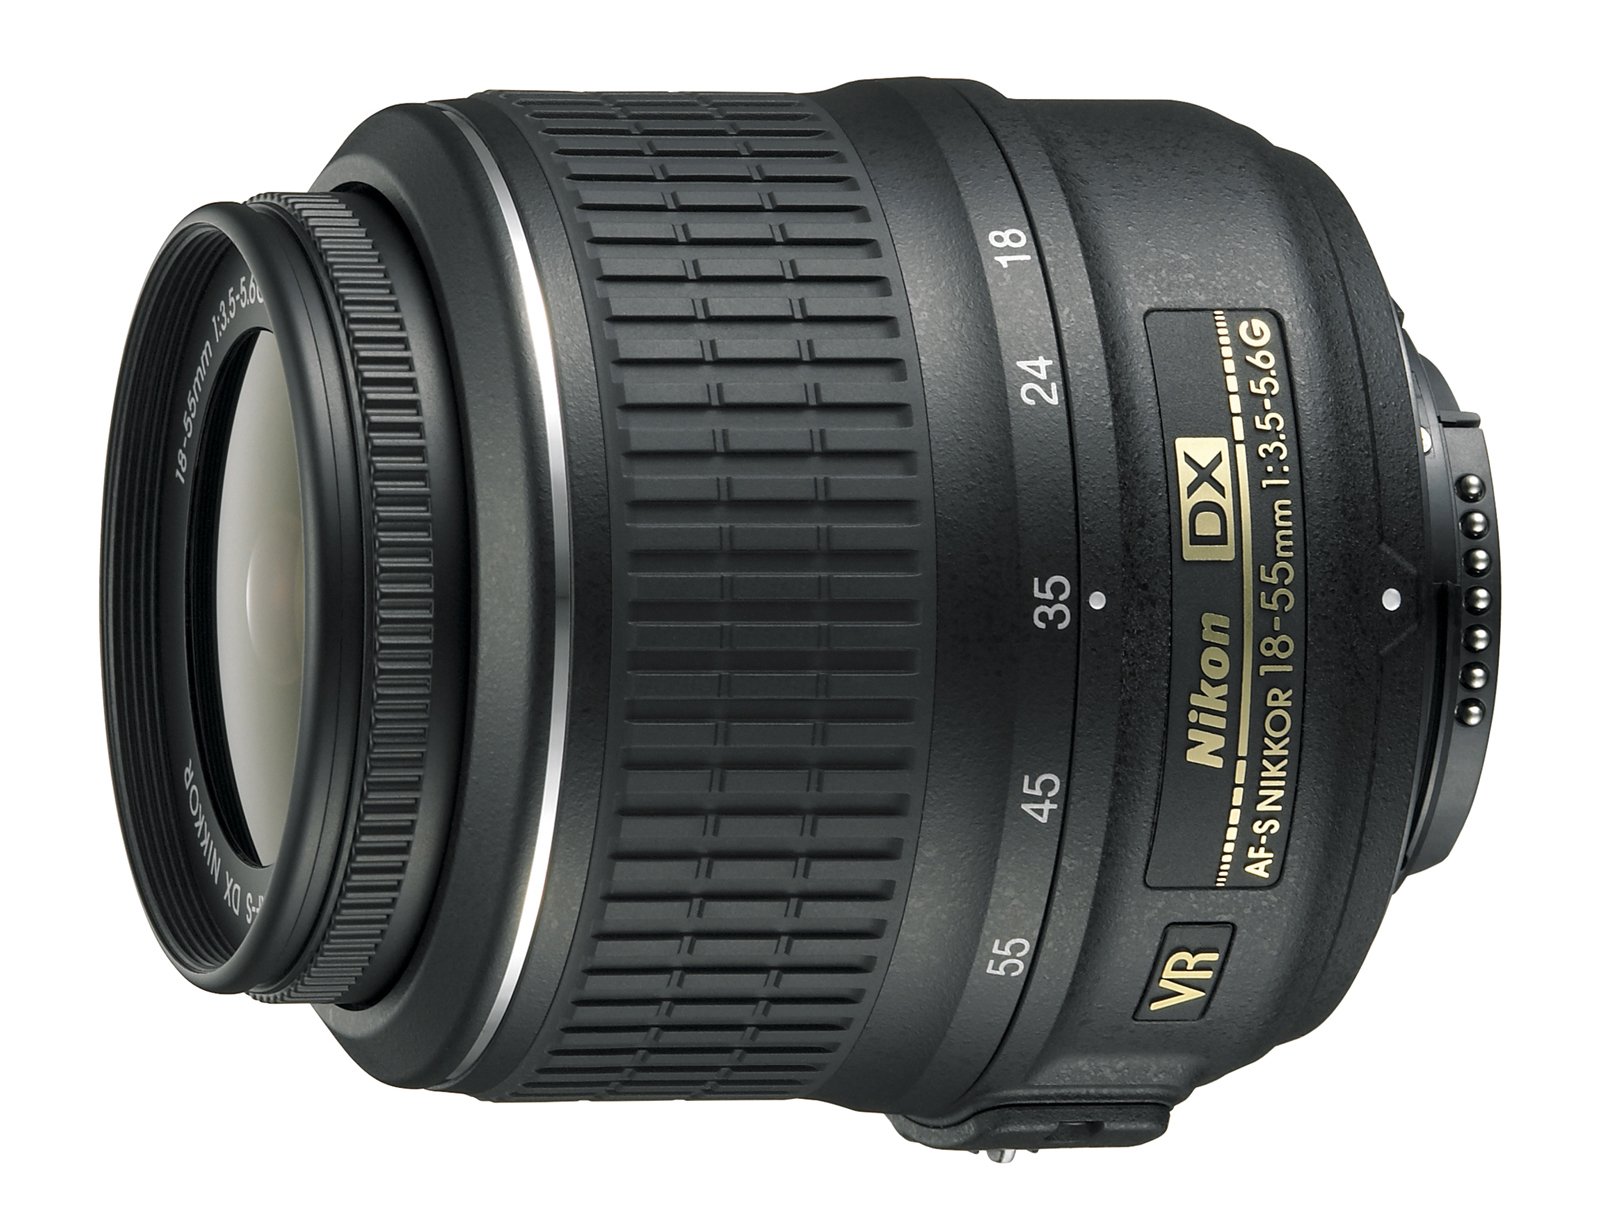 Nikon 18-55mm f/3.5-5.6G AF-S DX VR Nikkor Zoom Lens - White Box (New) (Bulk Packaging)